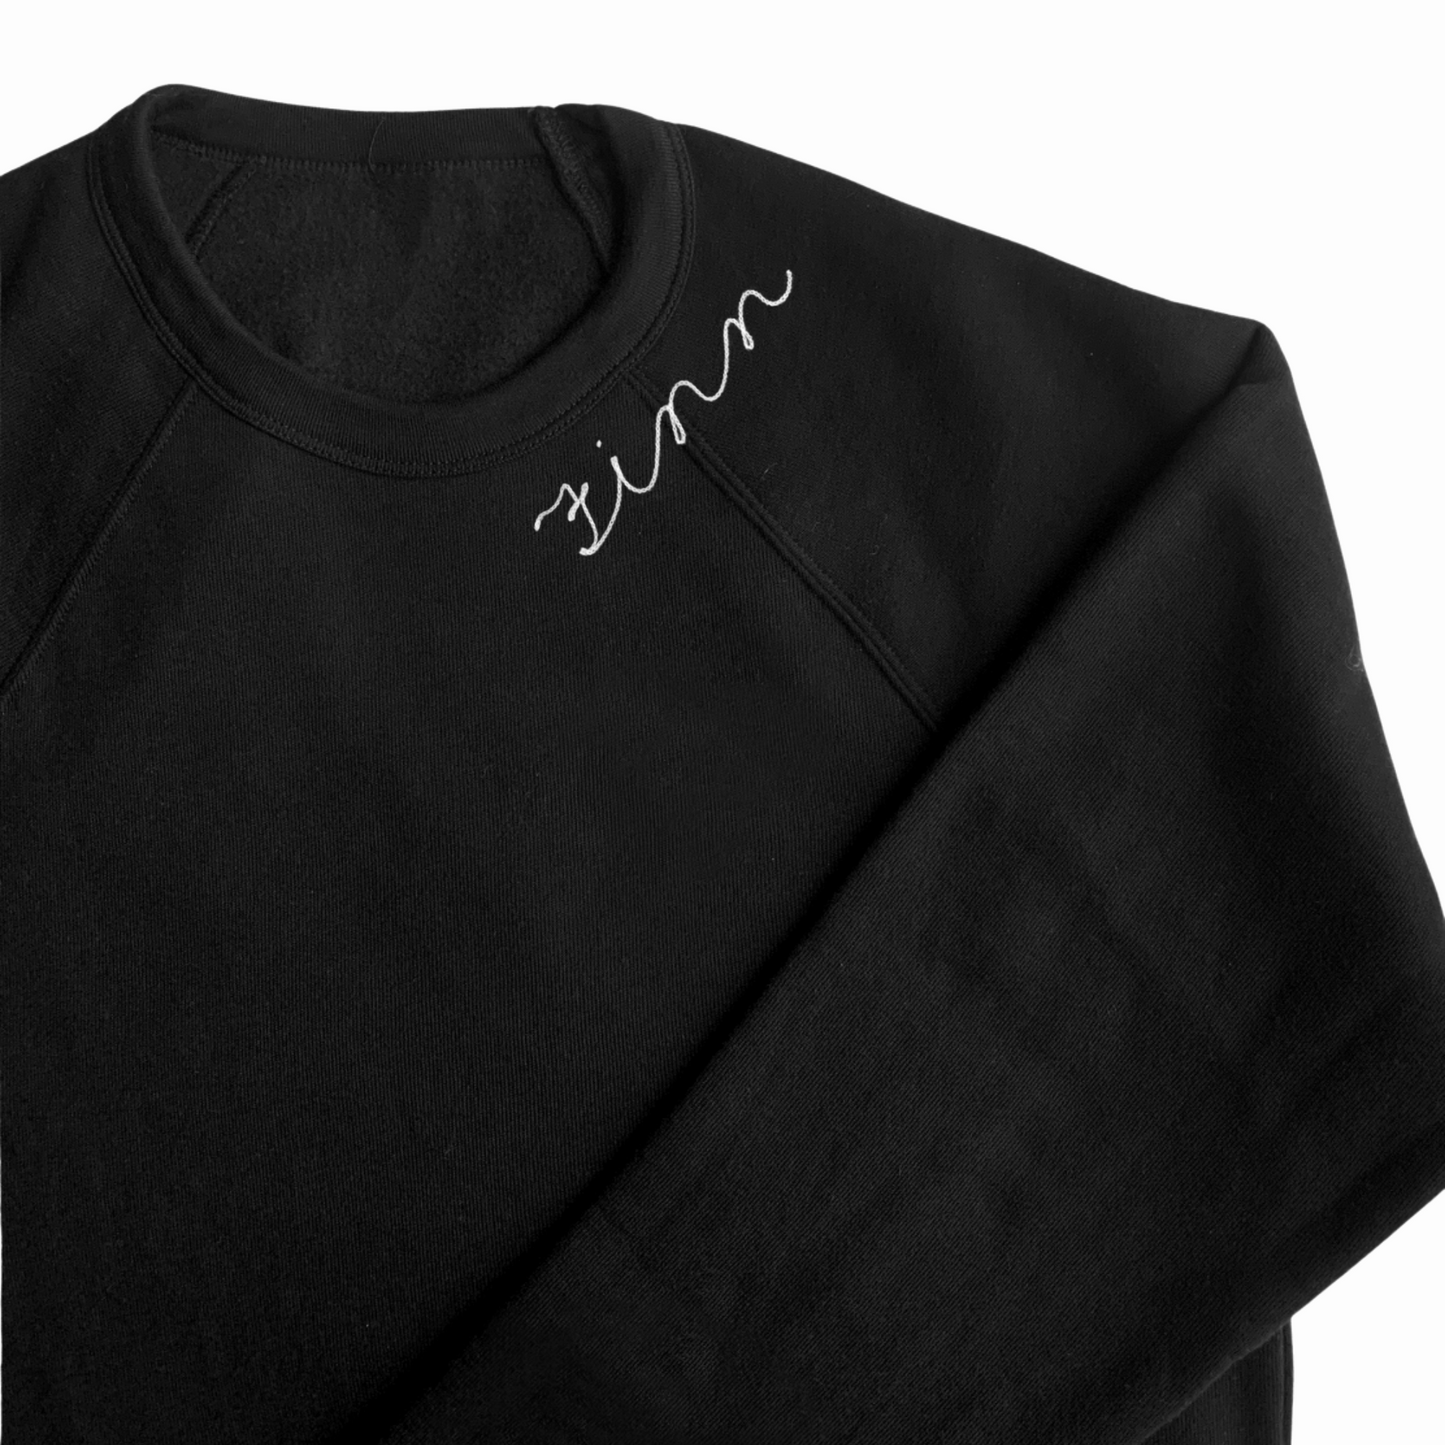 The Women's Cropped Chainstitch Sweatshirt - Black